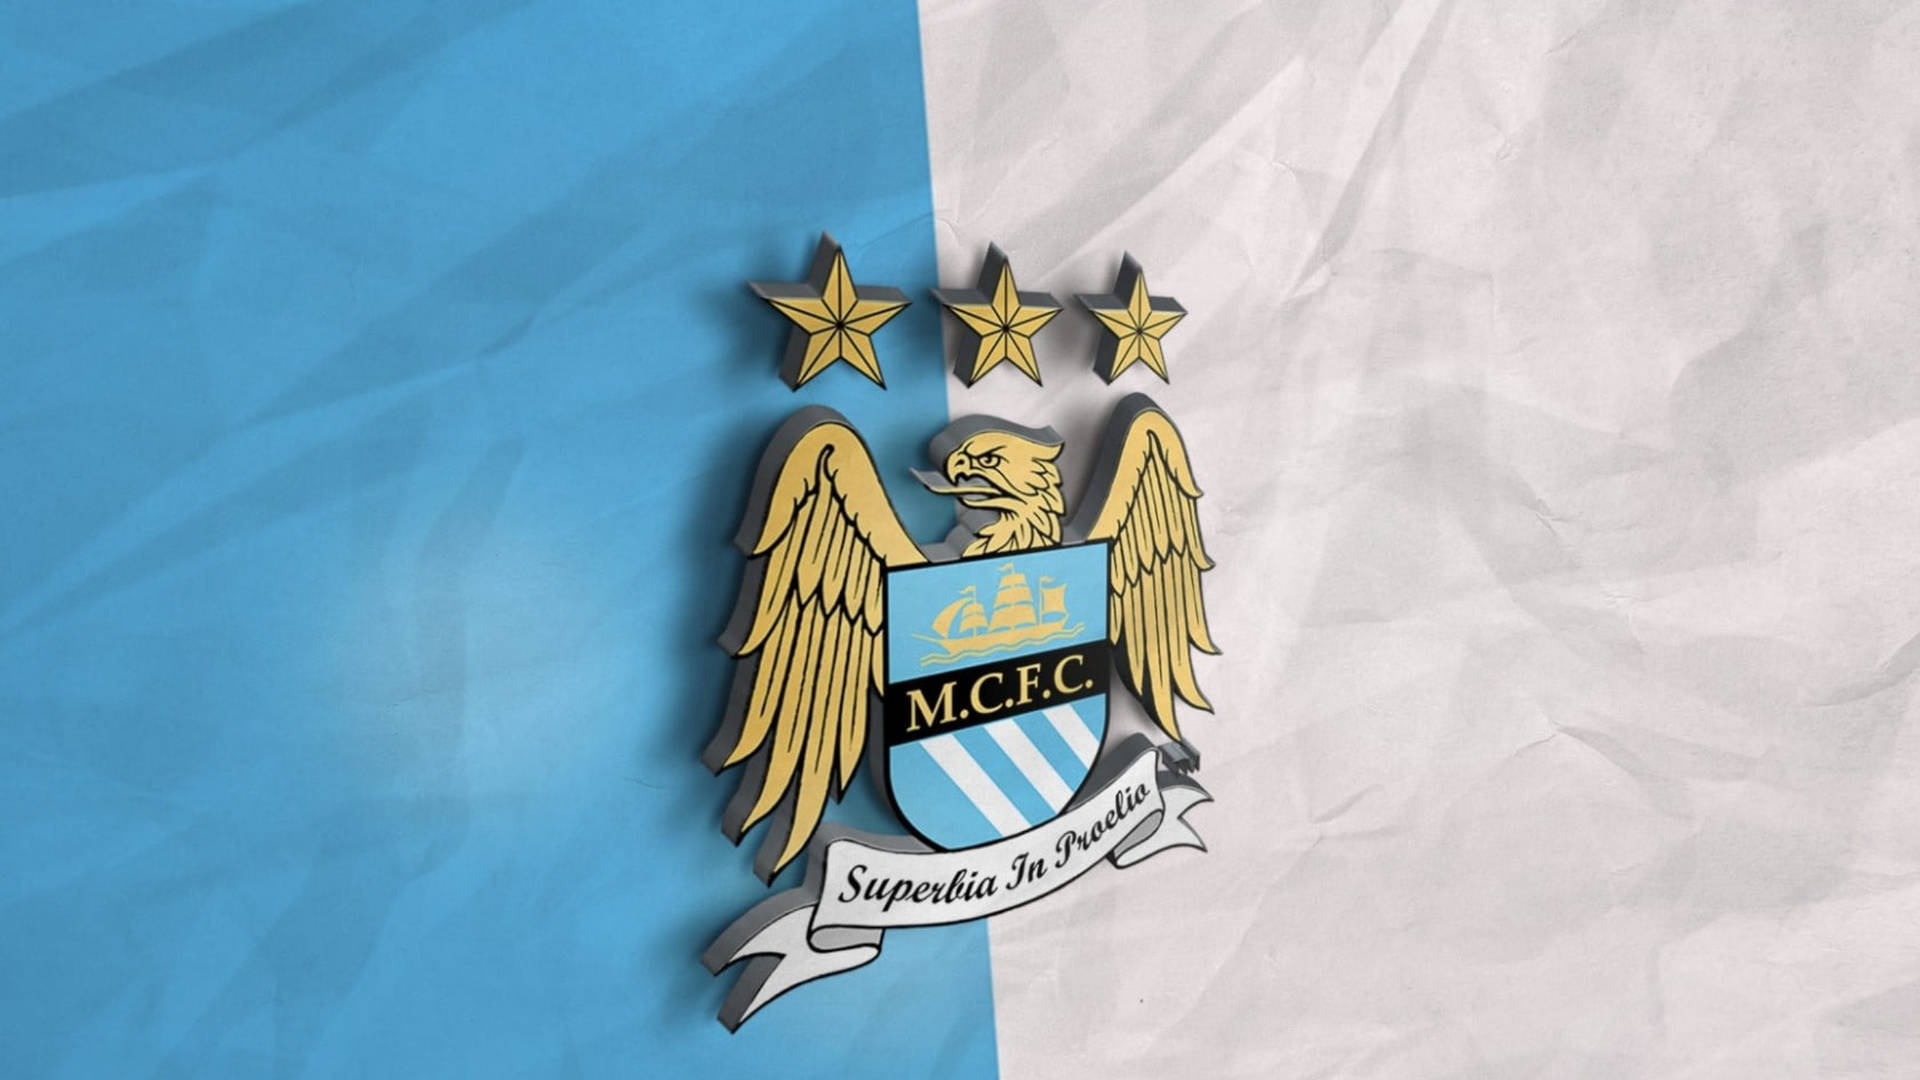 Manchester City Emblem With Premier League Recognition